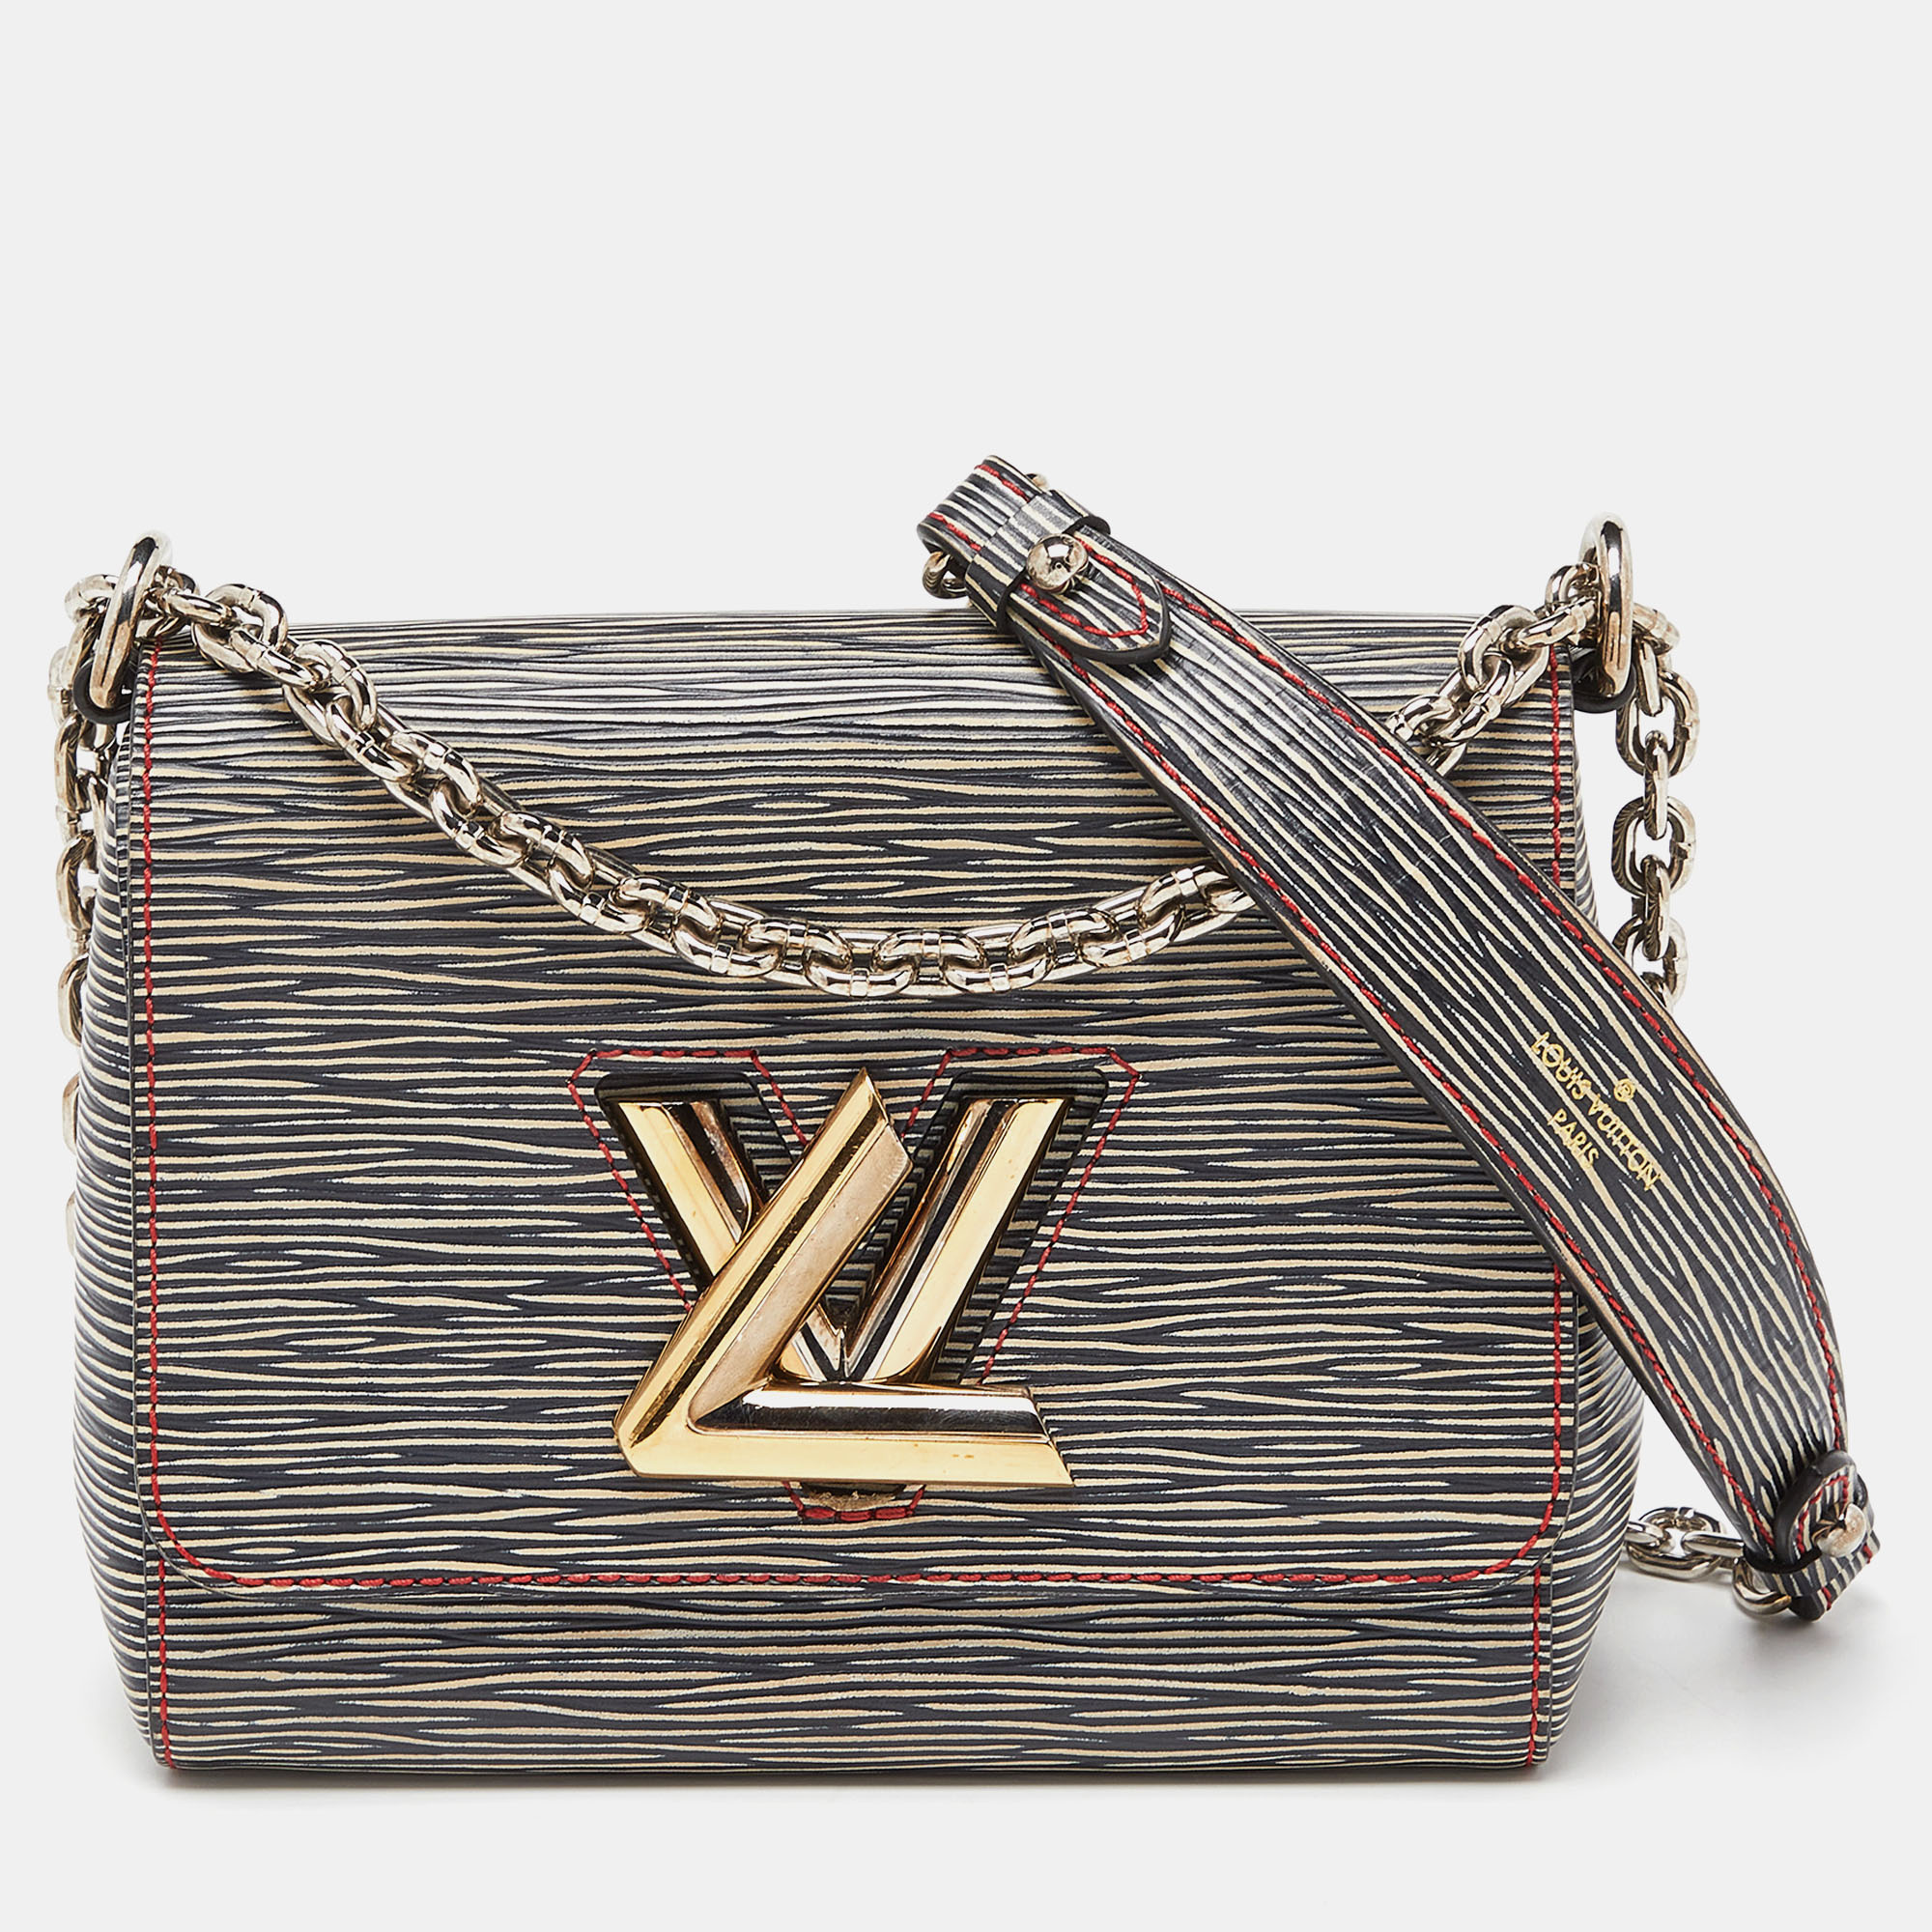 Pre-owned Louis Vuitton Black/beige Epi Leather Twist Pm Bag